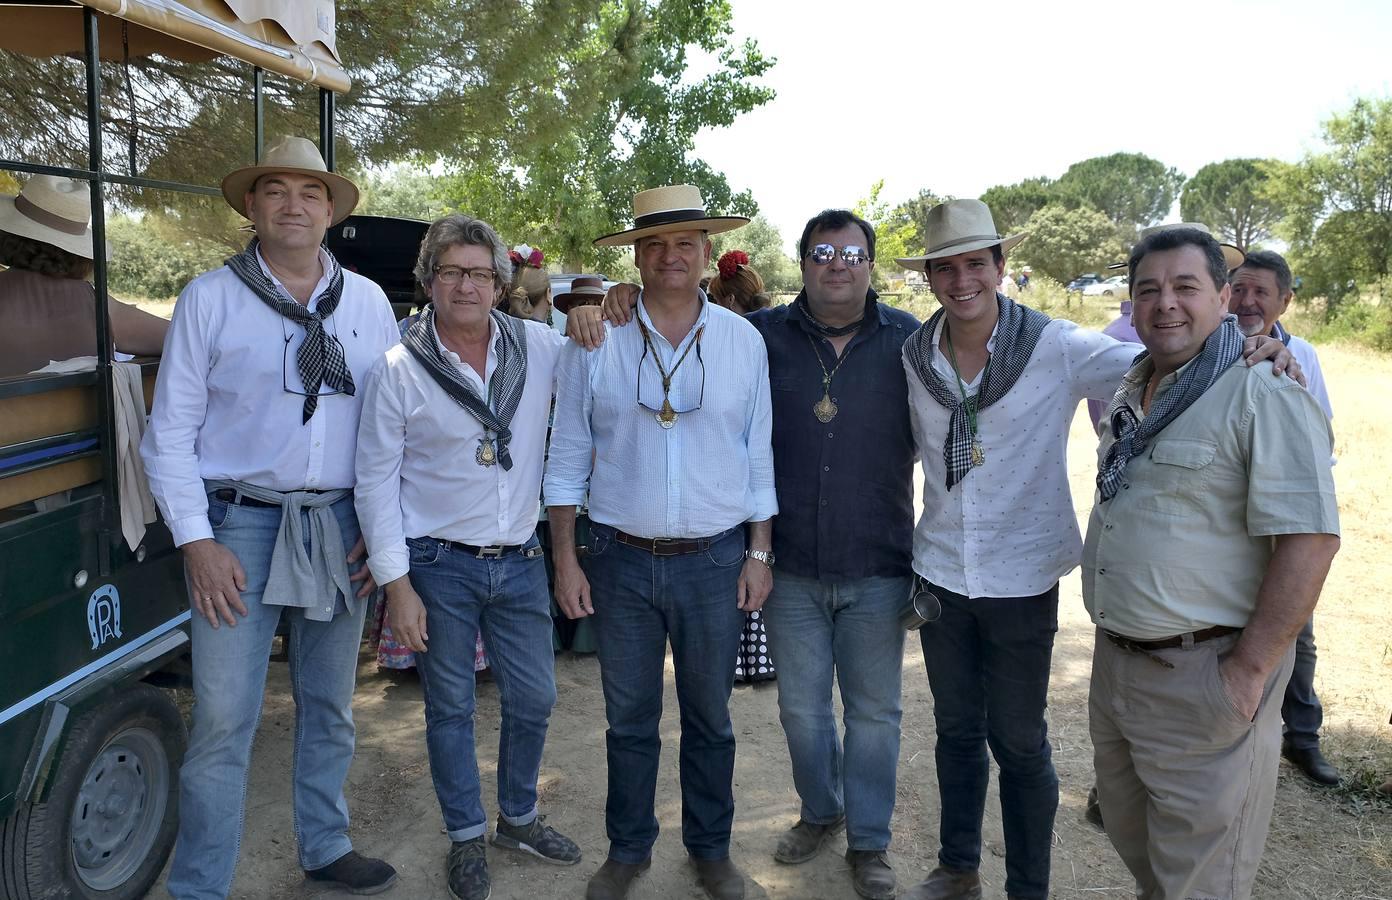 Miguel Ángel Farfán, Raúl Lancharro, Nono Bovis, Aurelio León, Raul Lancharro y Paco Pérez